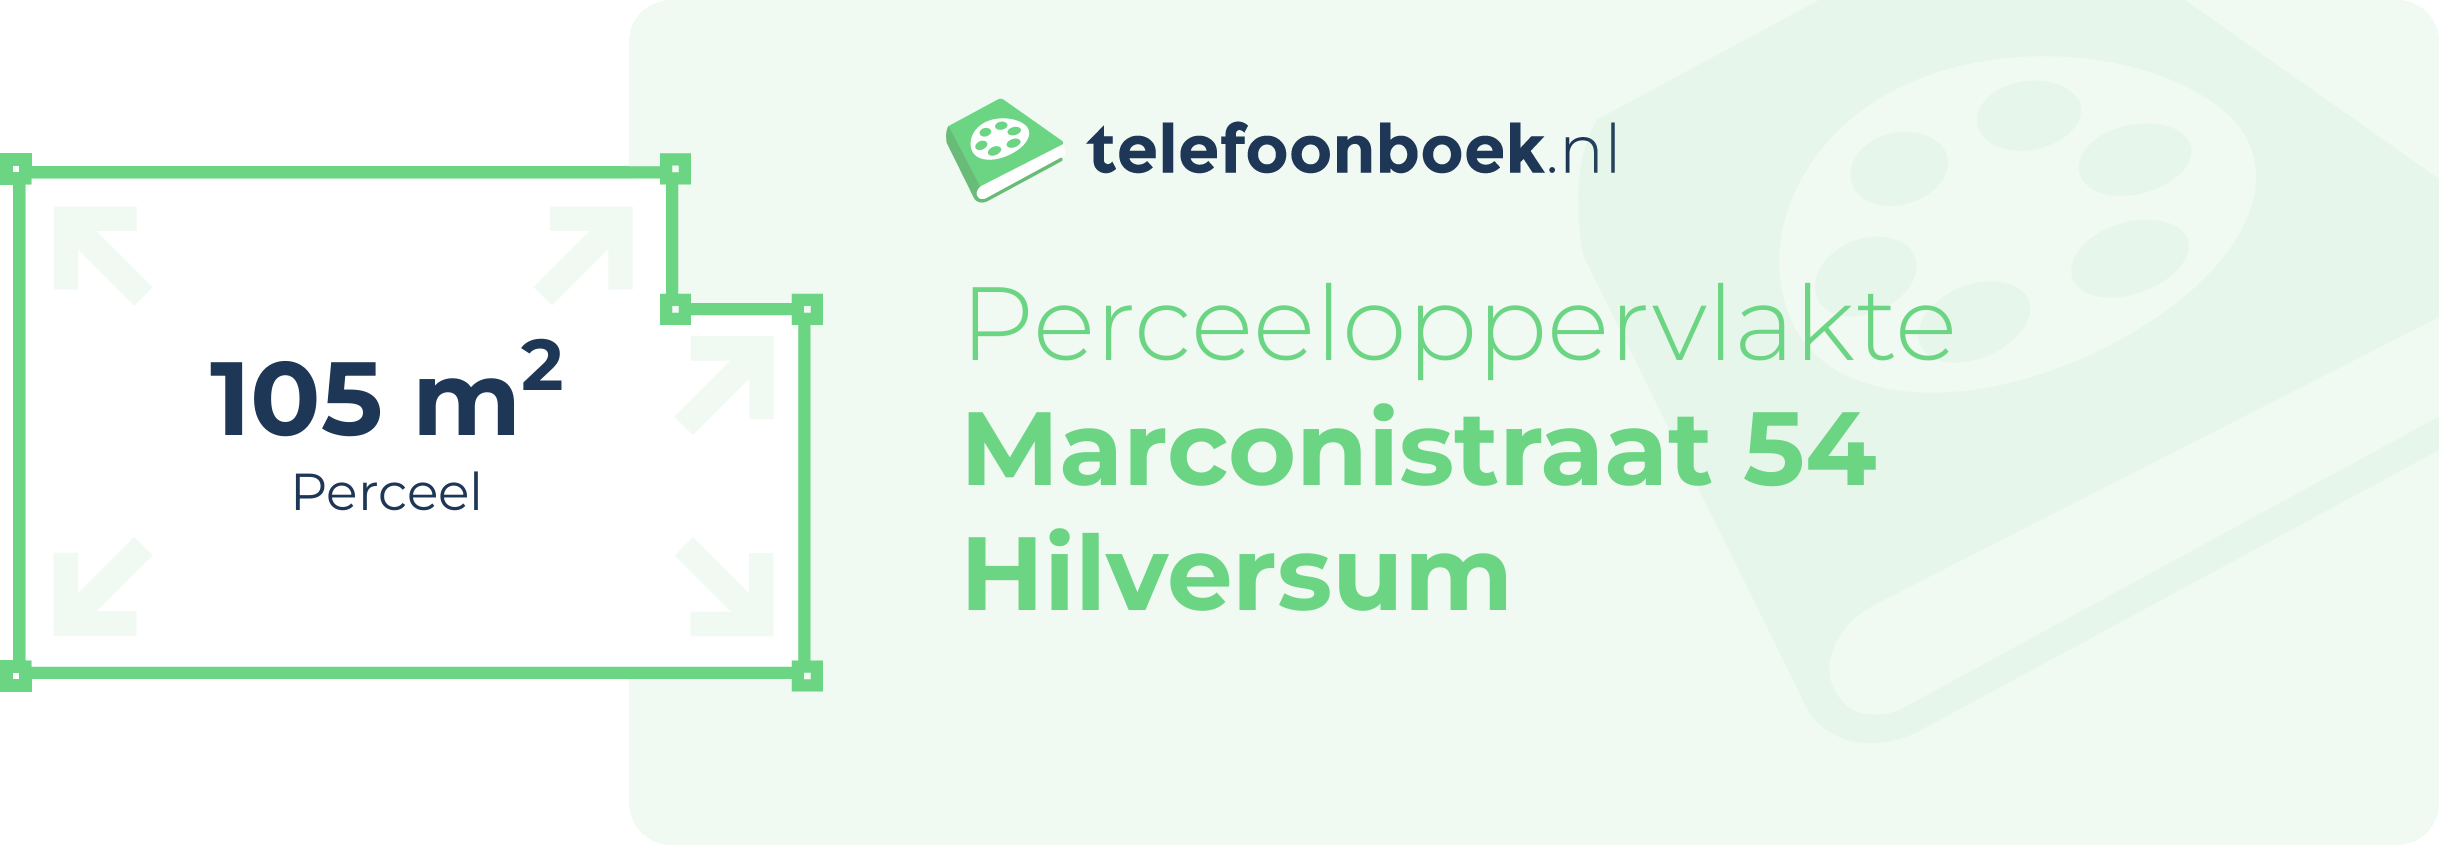 Perceeloppervlakte Marconistraat 54 Hilversum